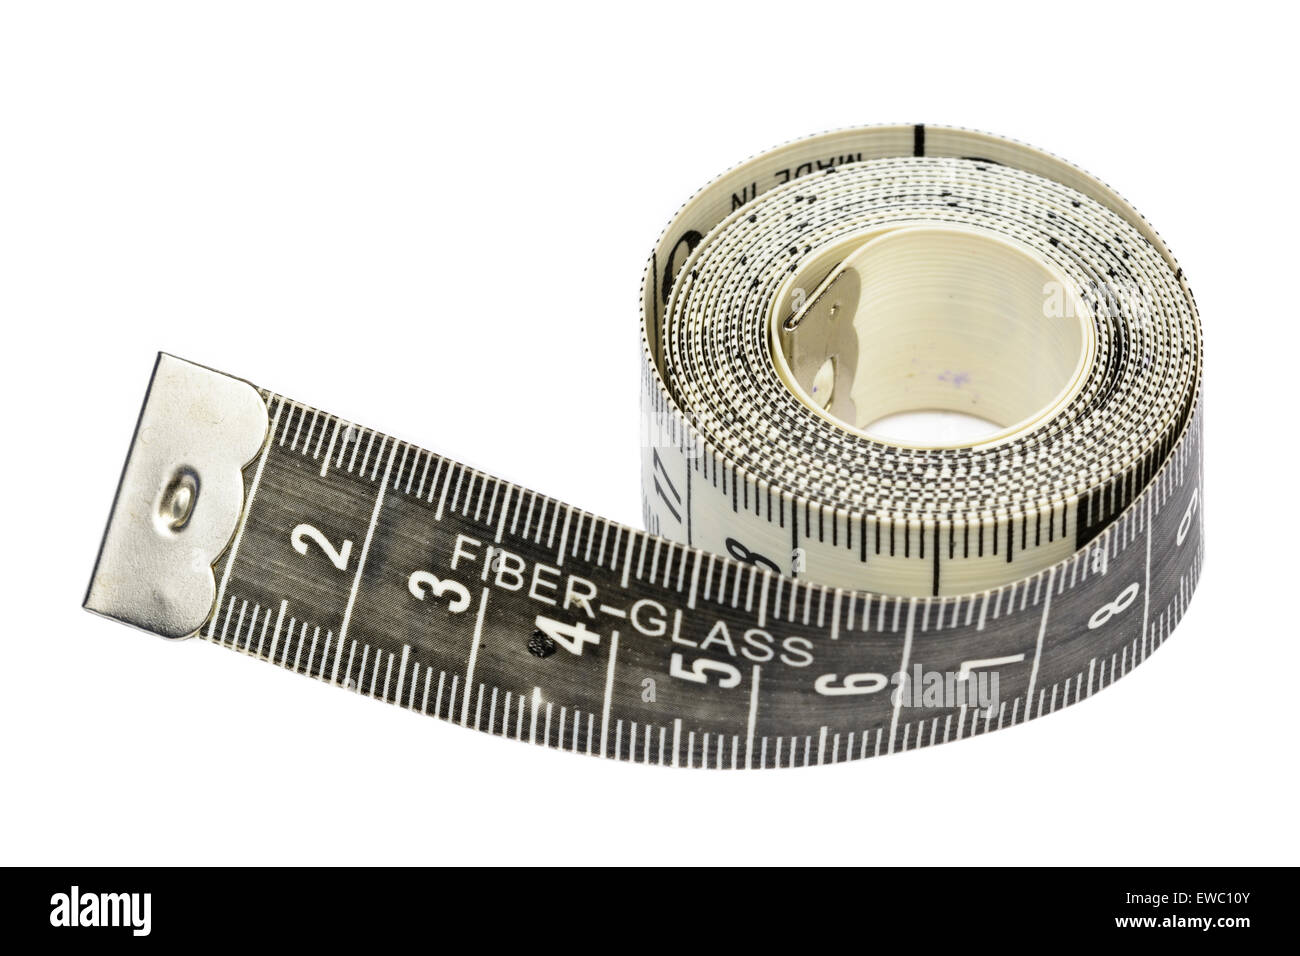 cinta metrica para medir en centimetros,ideal para costura Stock Photo